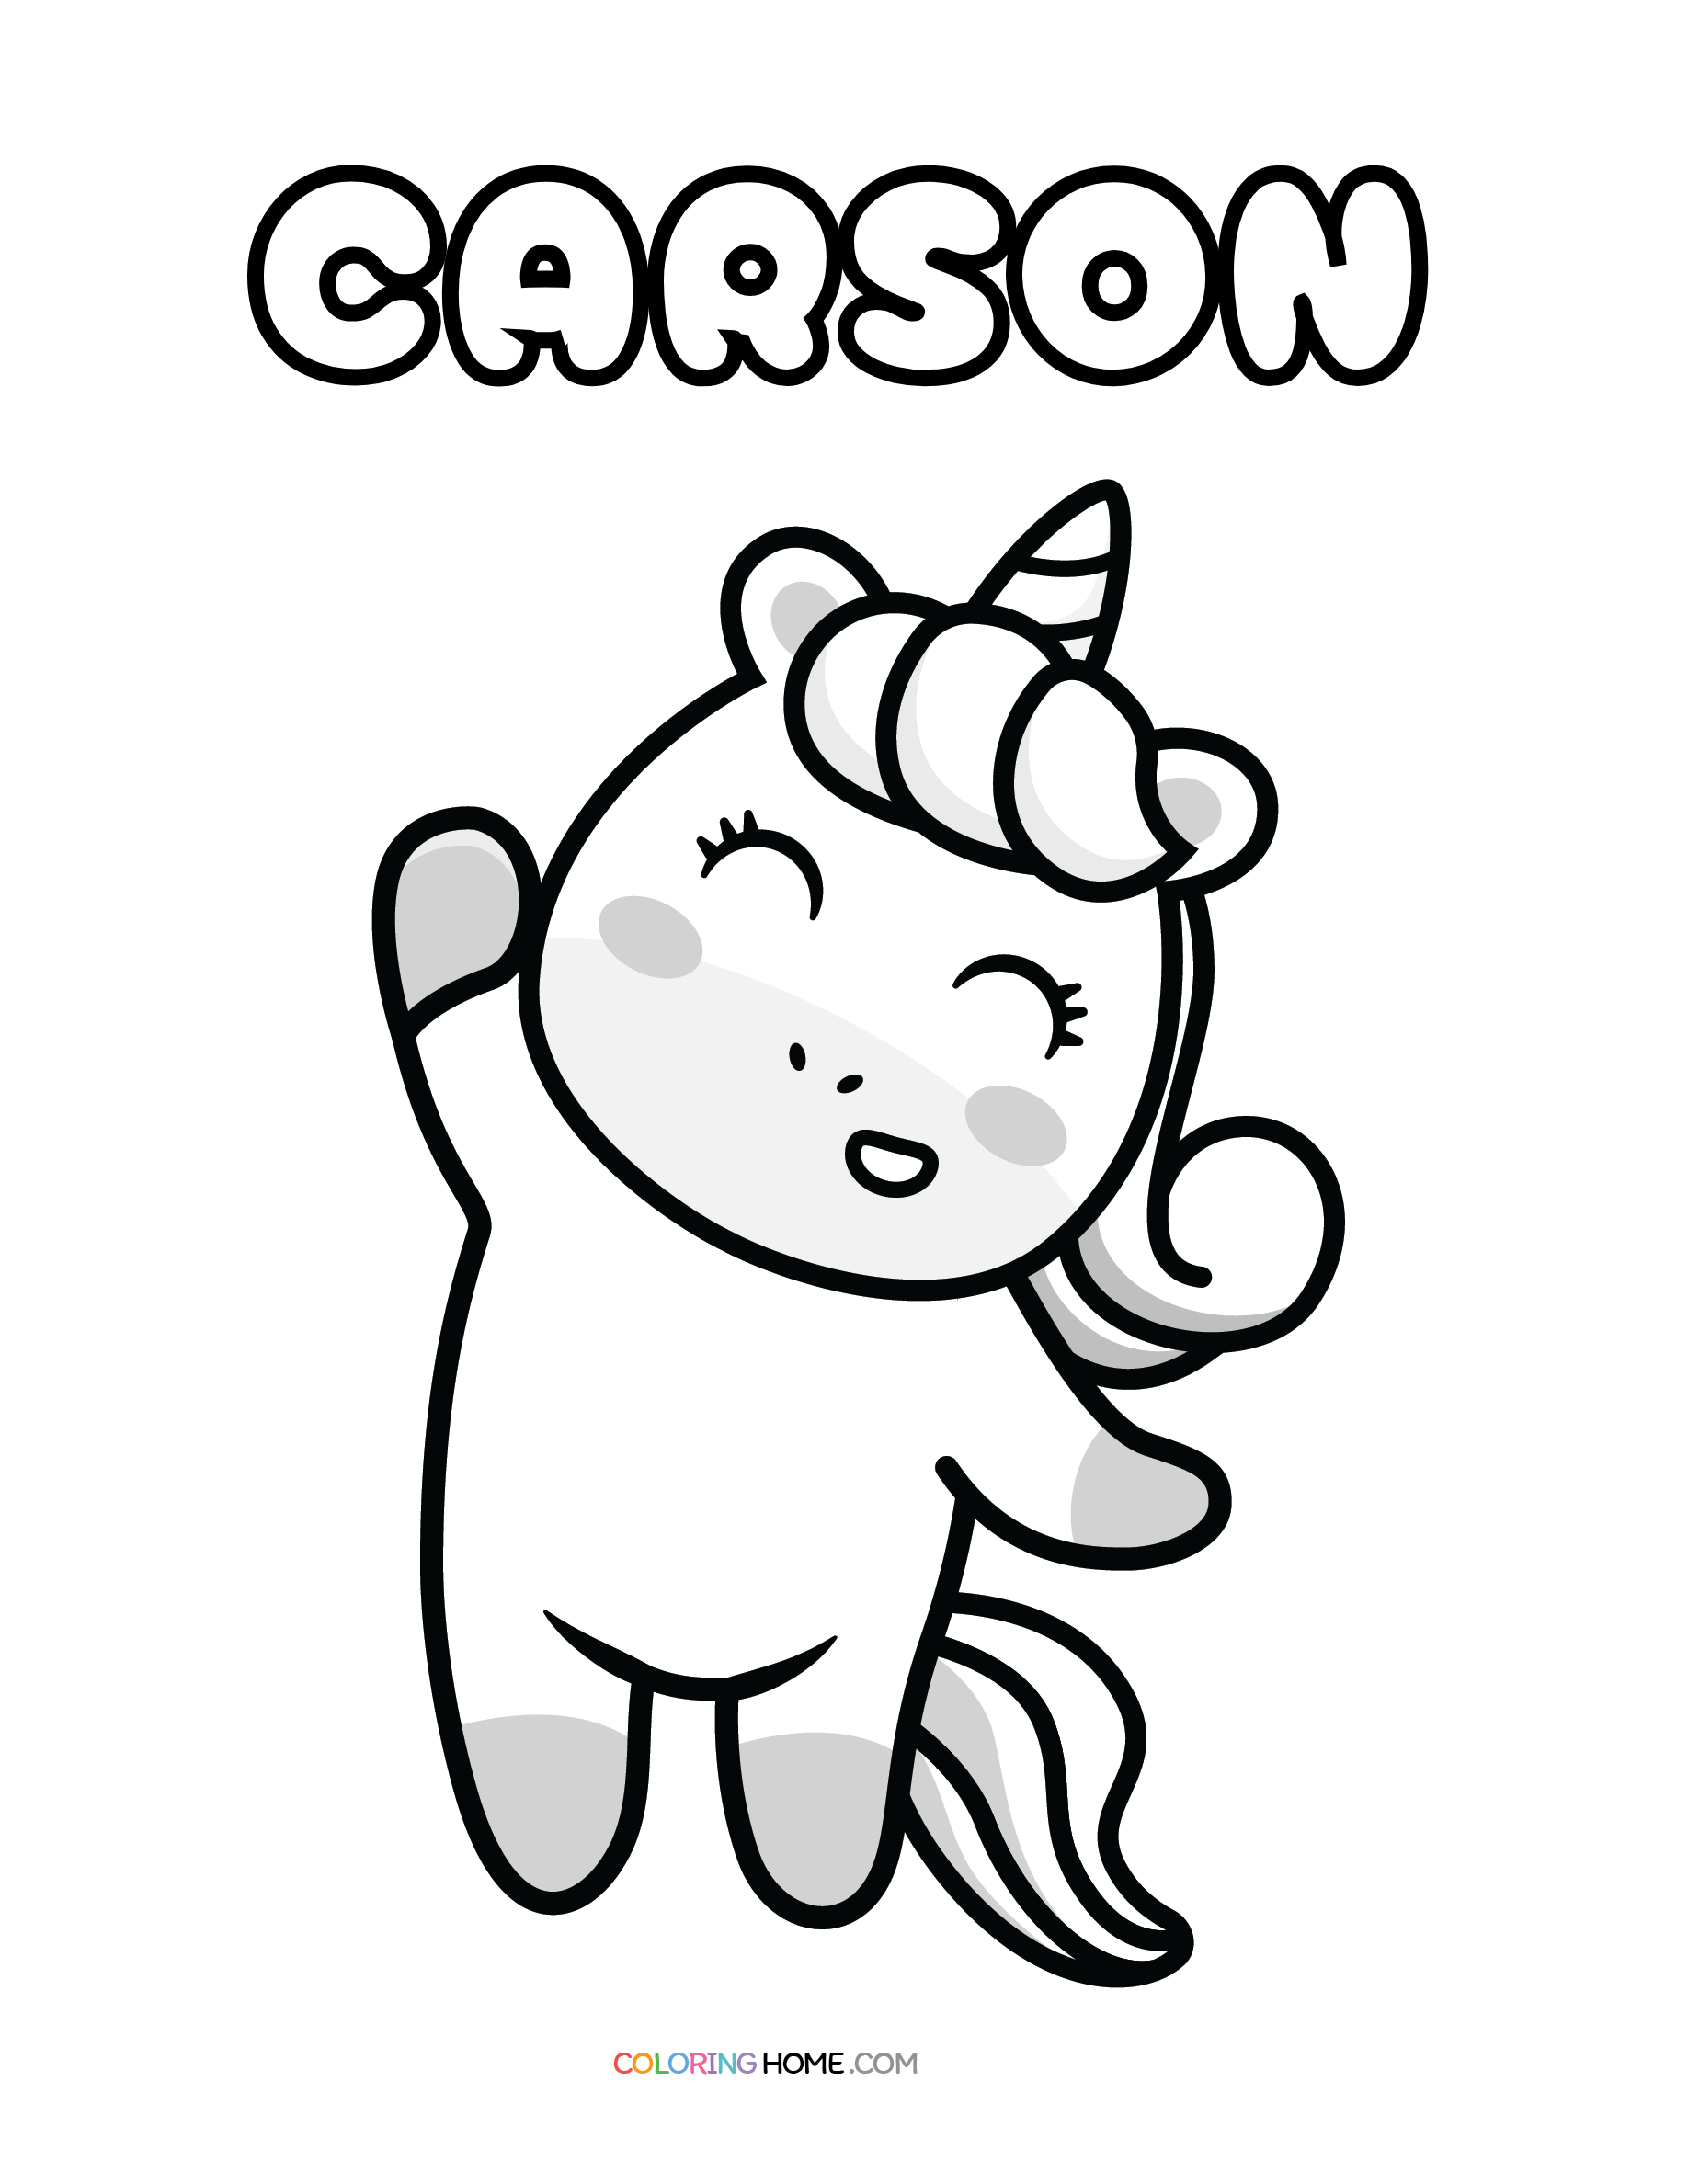 Carson unicorn coloring page